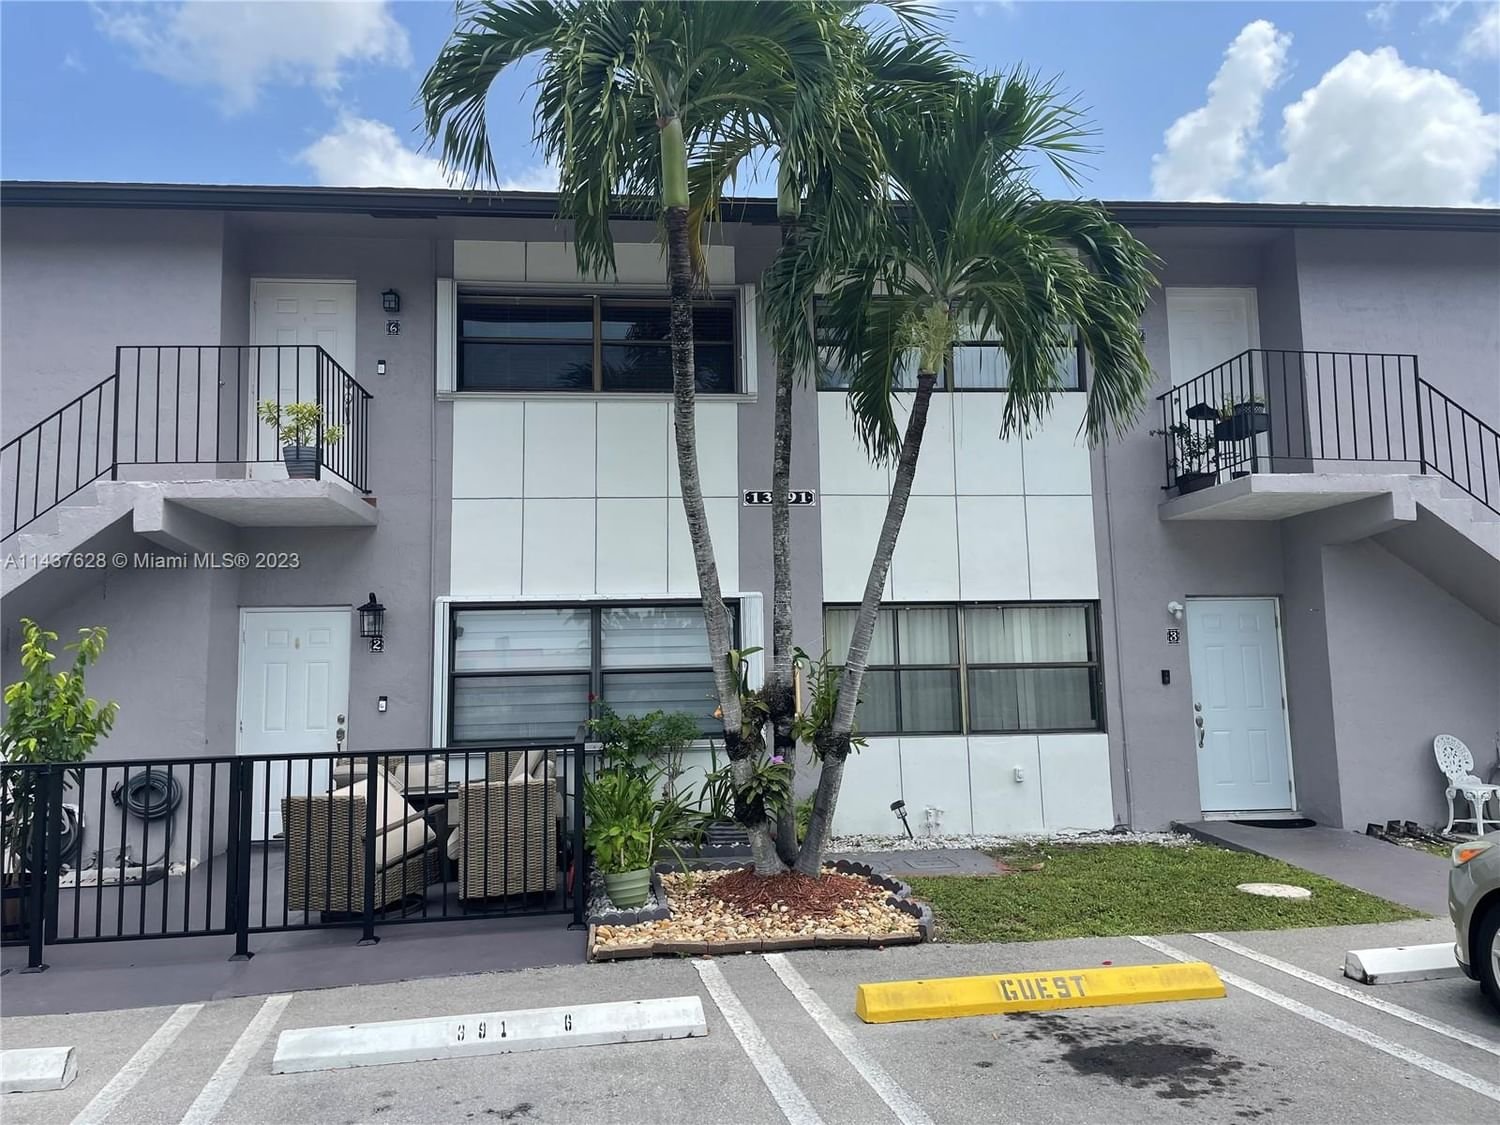 Real estate property located at 13391 17th Ln #1-4, Miami-Dade County, Miami, FL